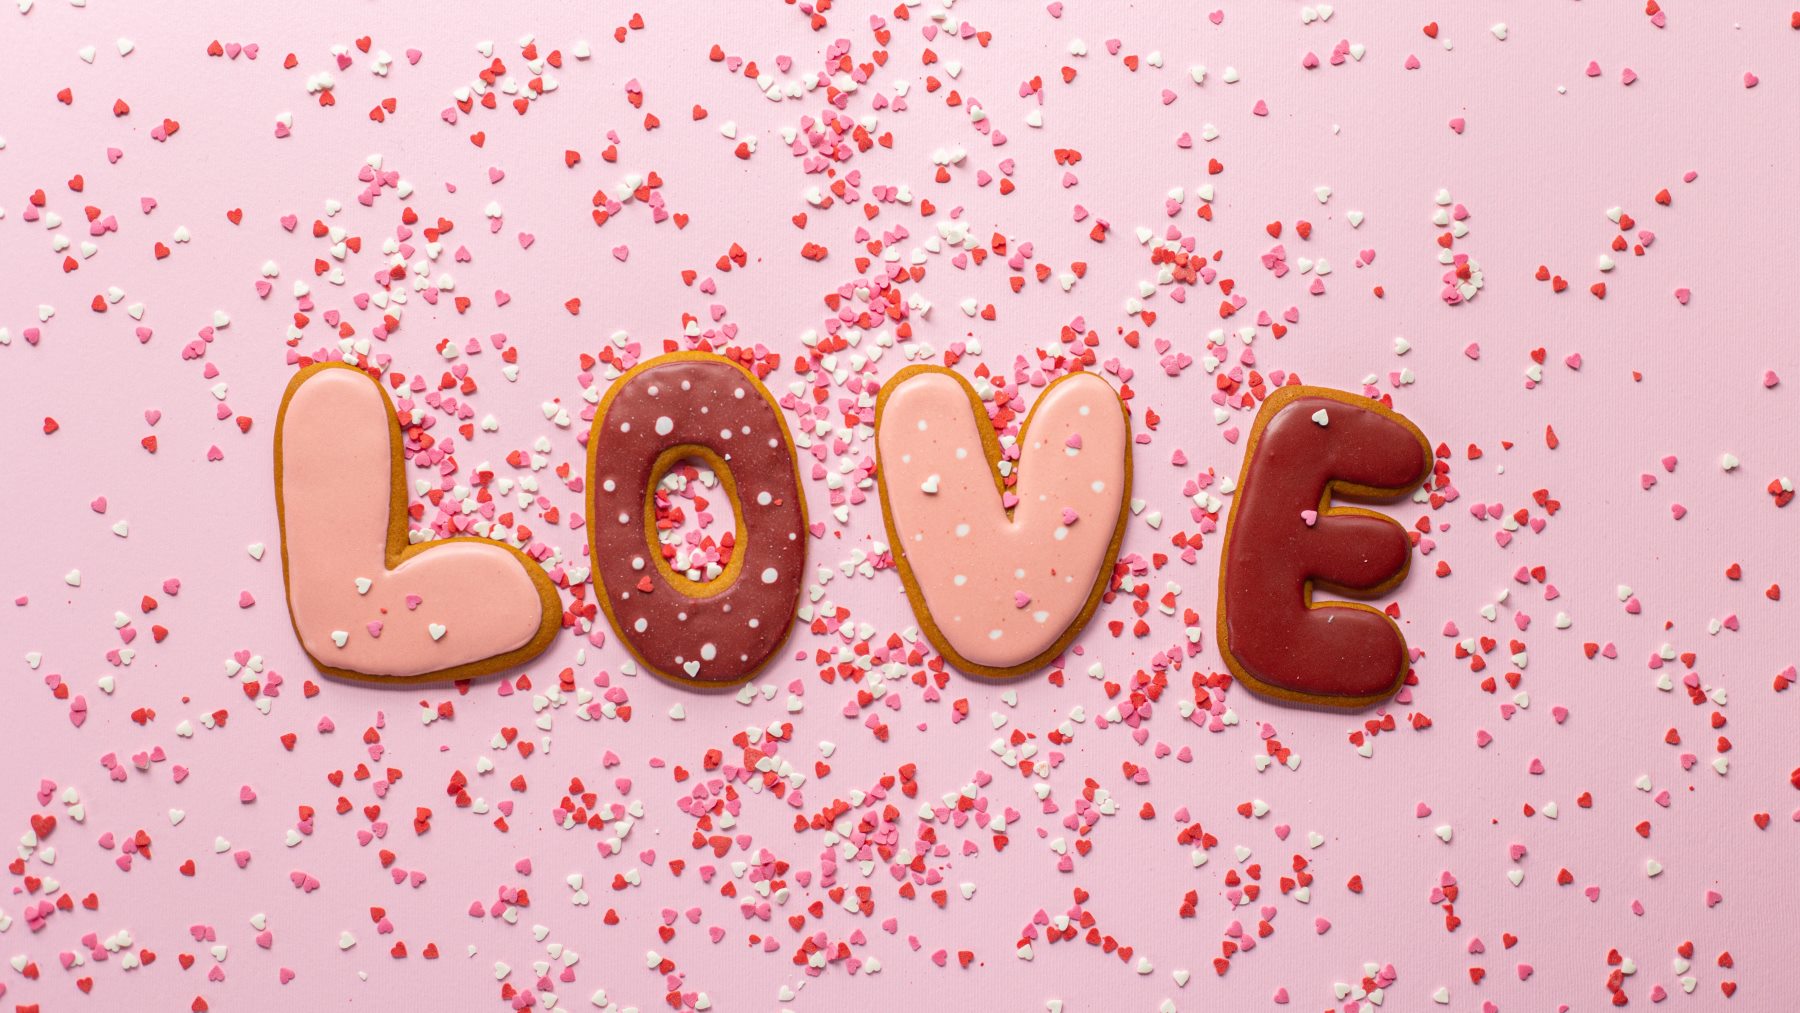 San Valentín: ¿por qué el día de los enamorados se celebra el 14 de febrero?